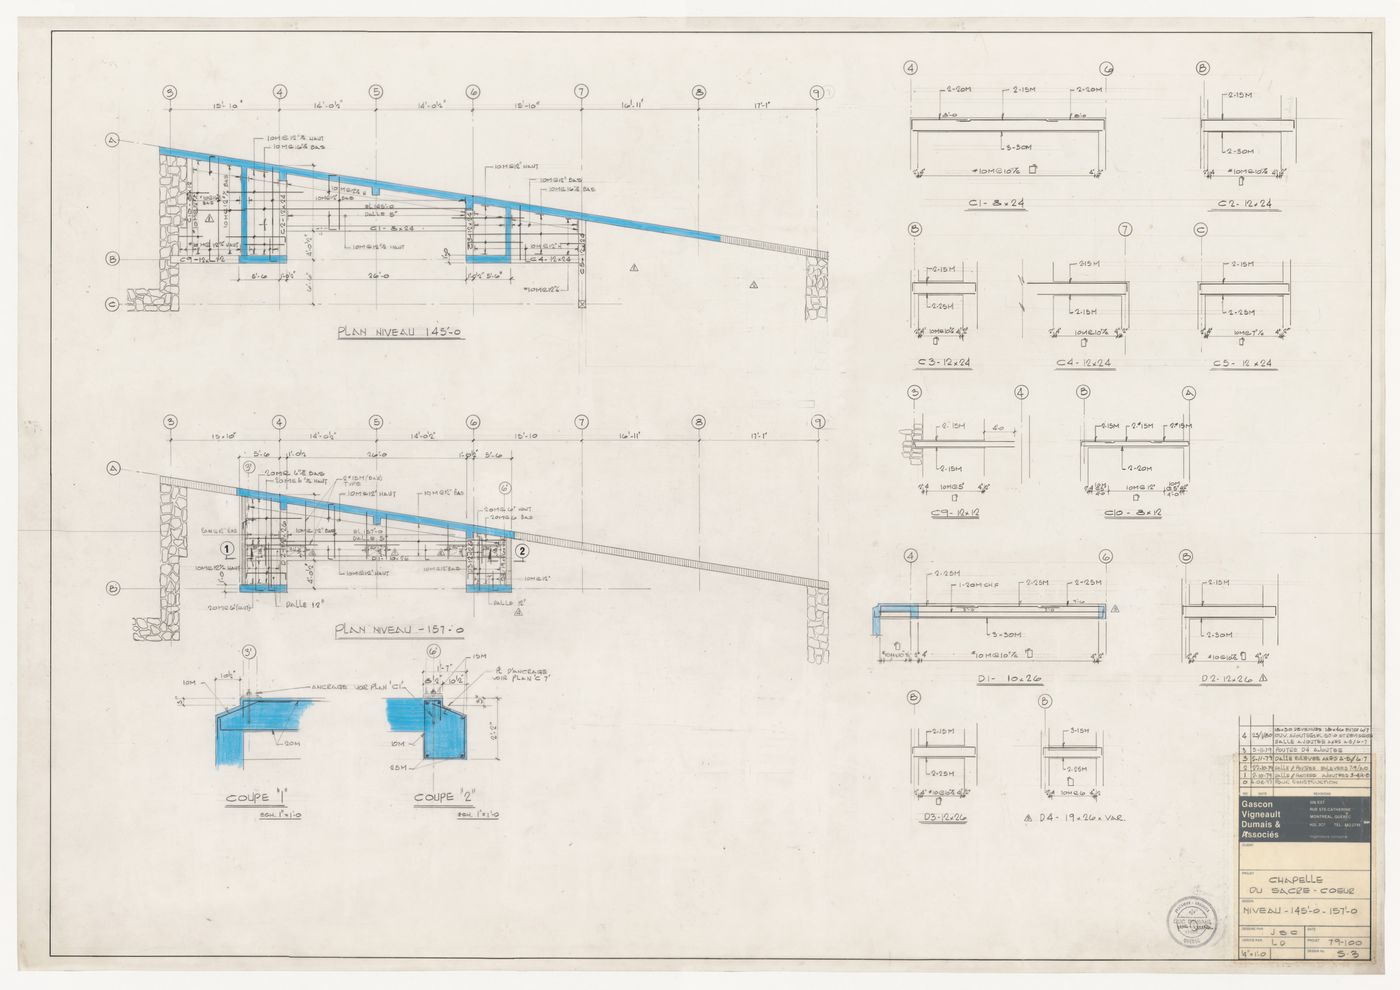 Plan and sections for construction details for the reconstruction of the Chapelle du Sacré-Coeur, Notre-Dame de Montréal